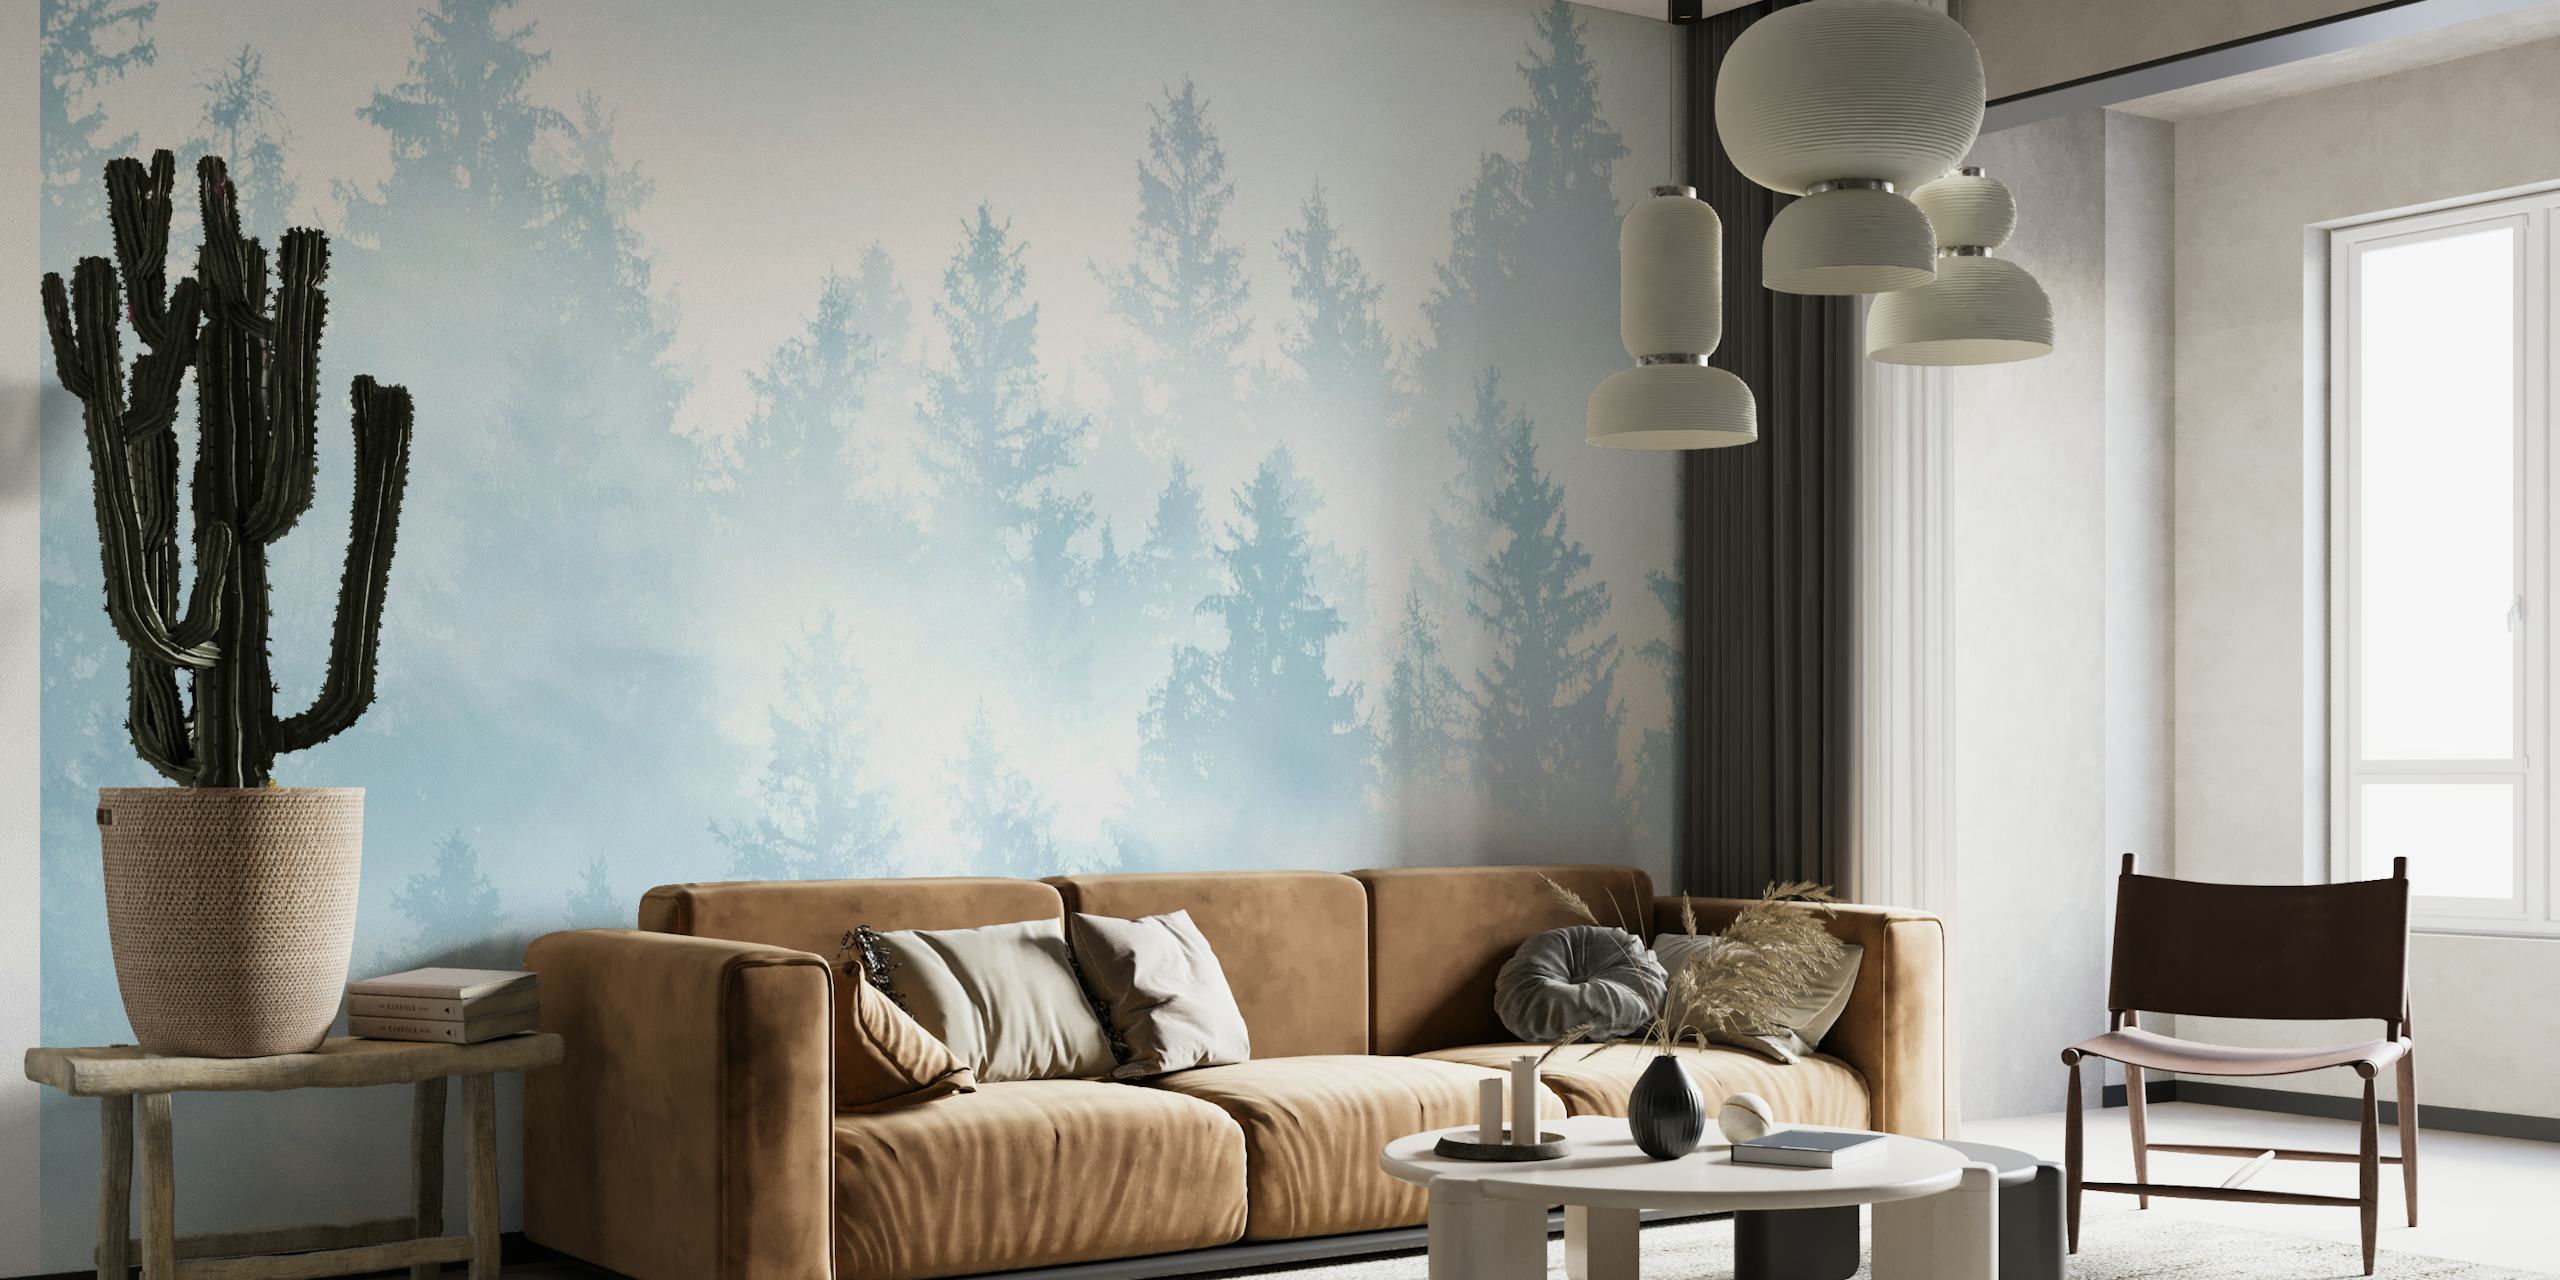 Soft Blue Forest Dream 1 wallpaper